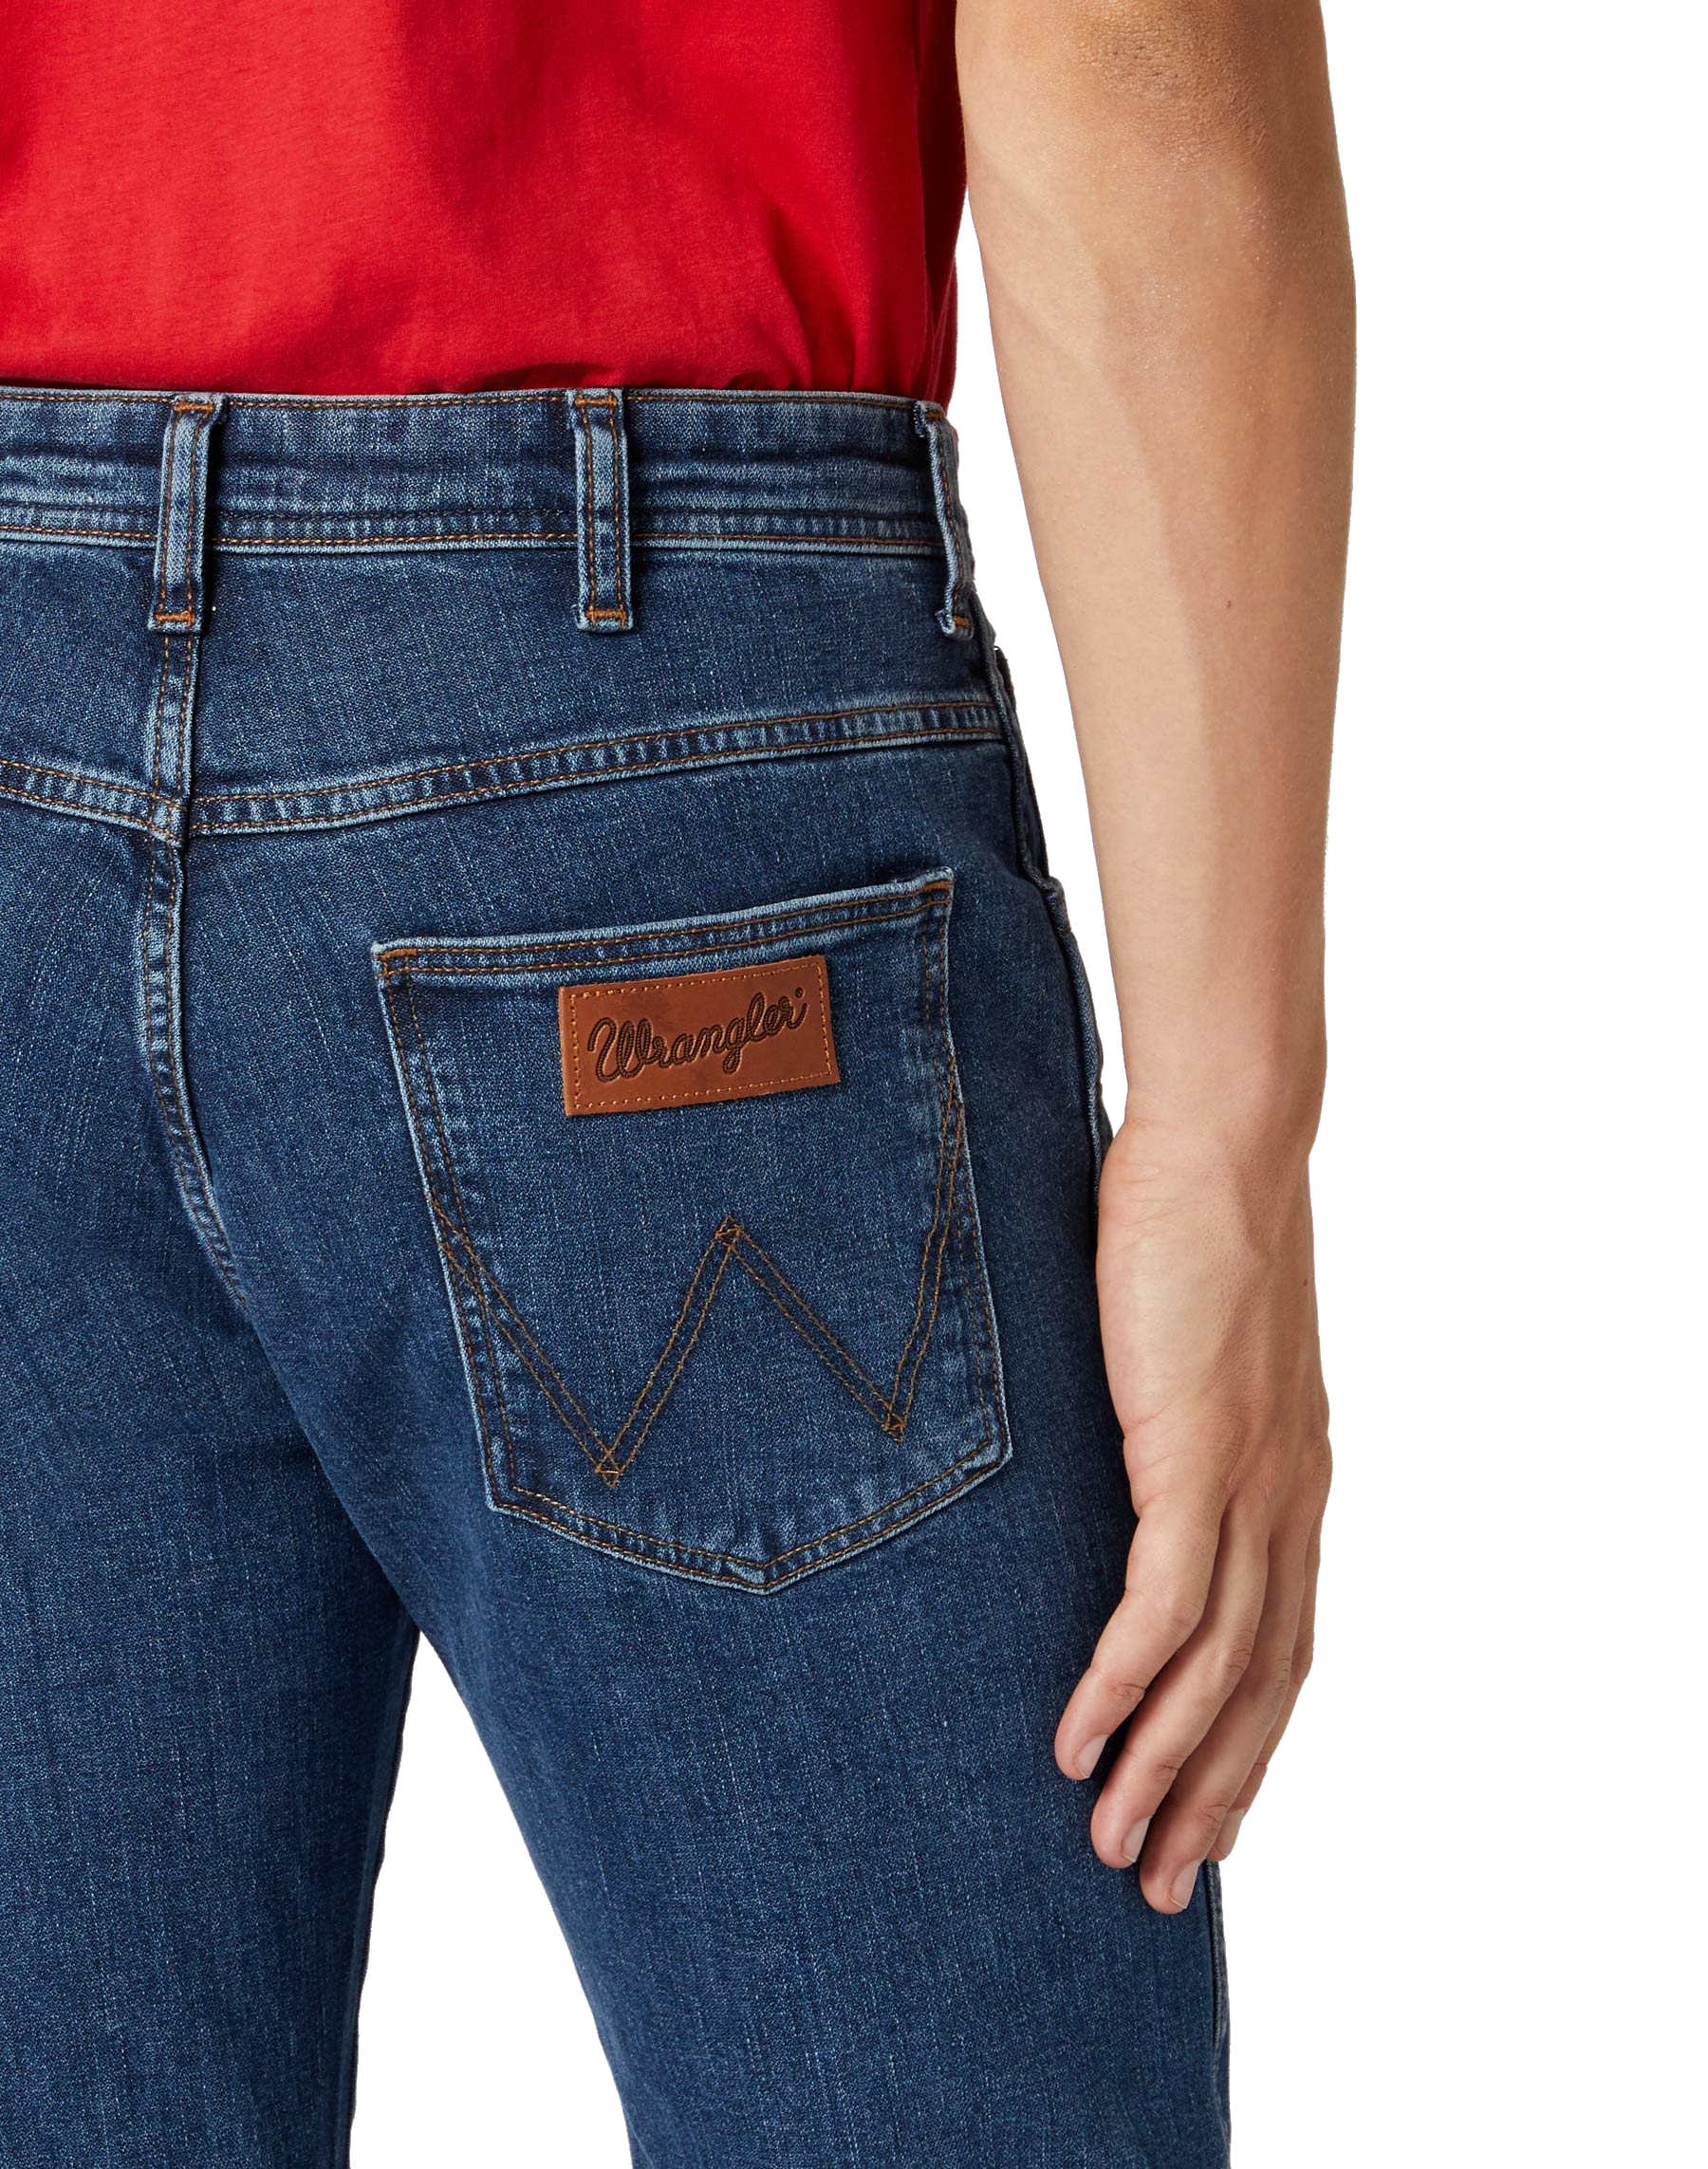 Arizona und Herren Stretch ROLLING - ROCK Hose Herren Marken Damen online kaufen Jeans Jeans Wrangler